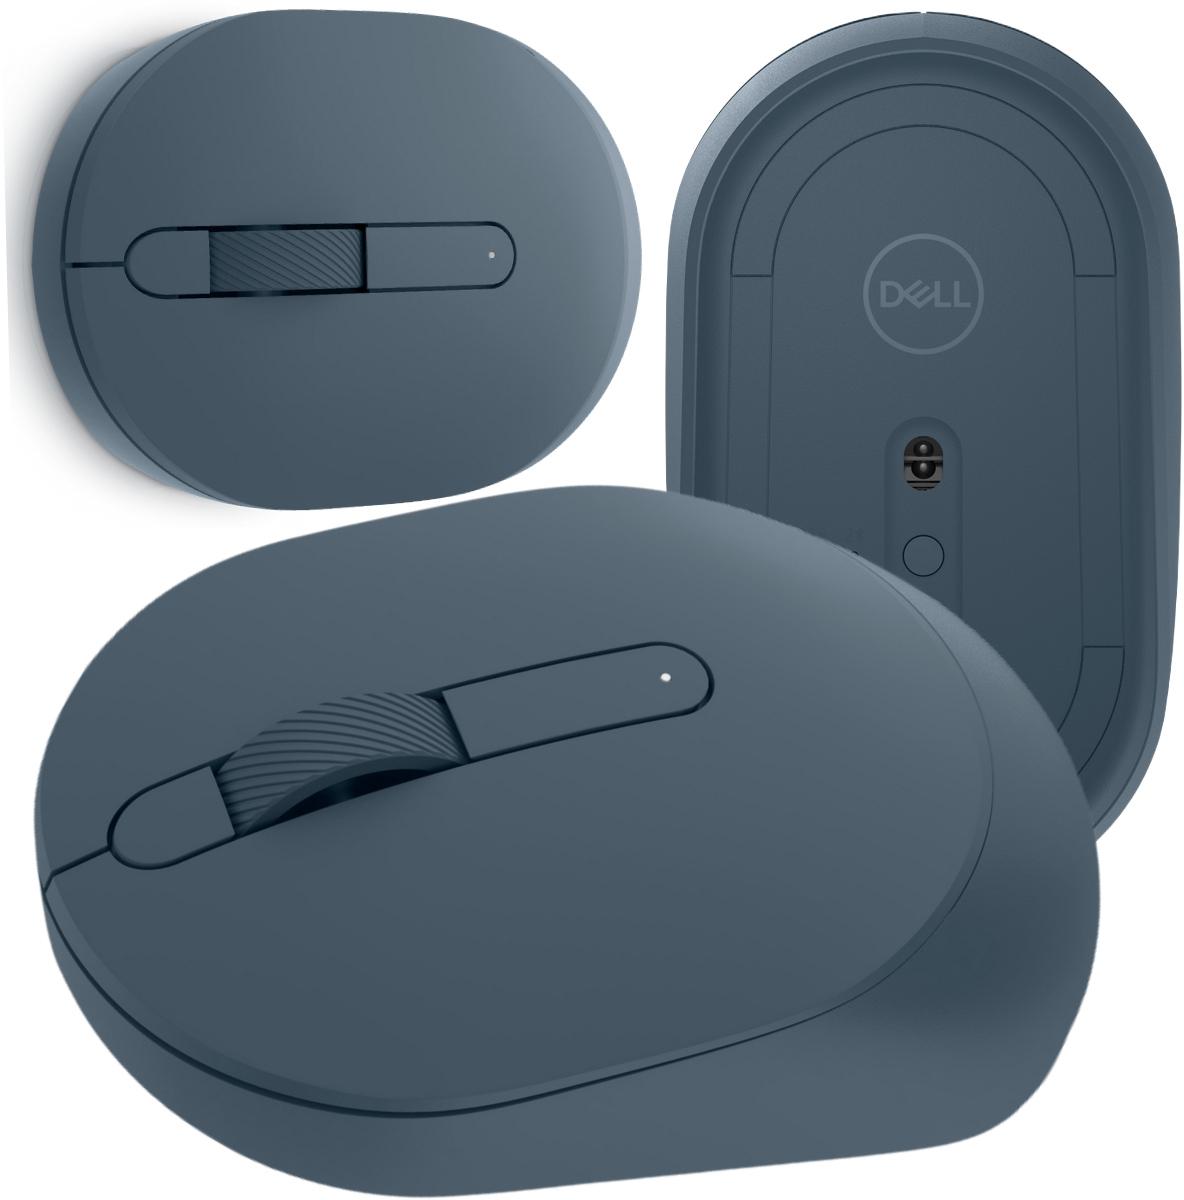 Bezprzewodowa mysz optyczna Dell MS3320W Mobile Wireless Mouse Midnight Green - najważniejsze cechy: